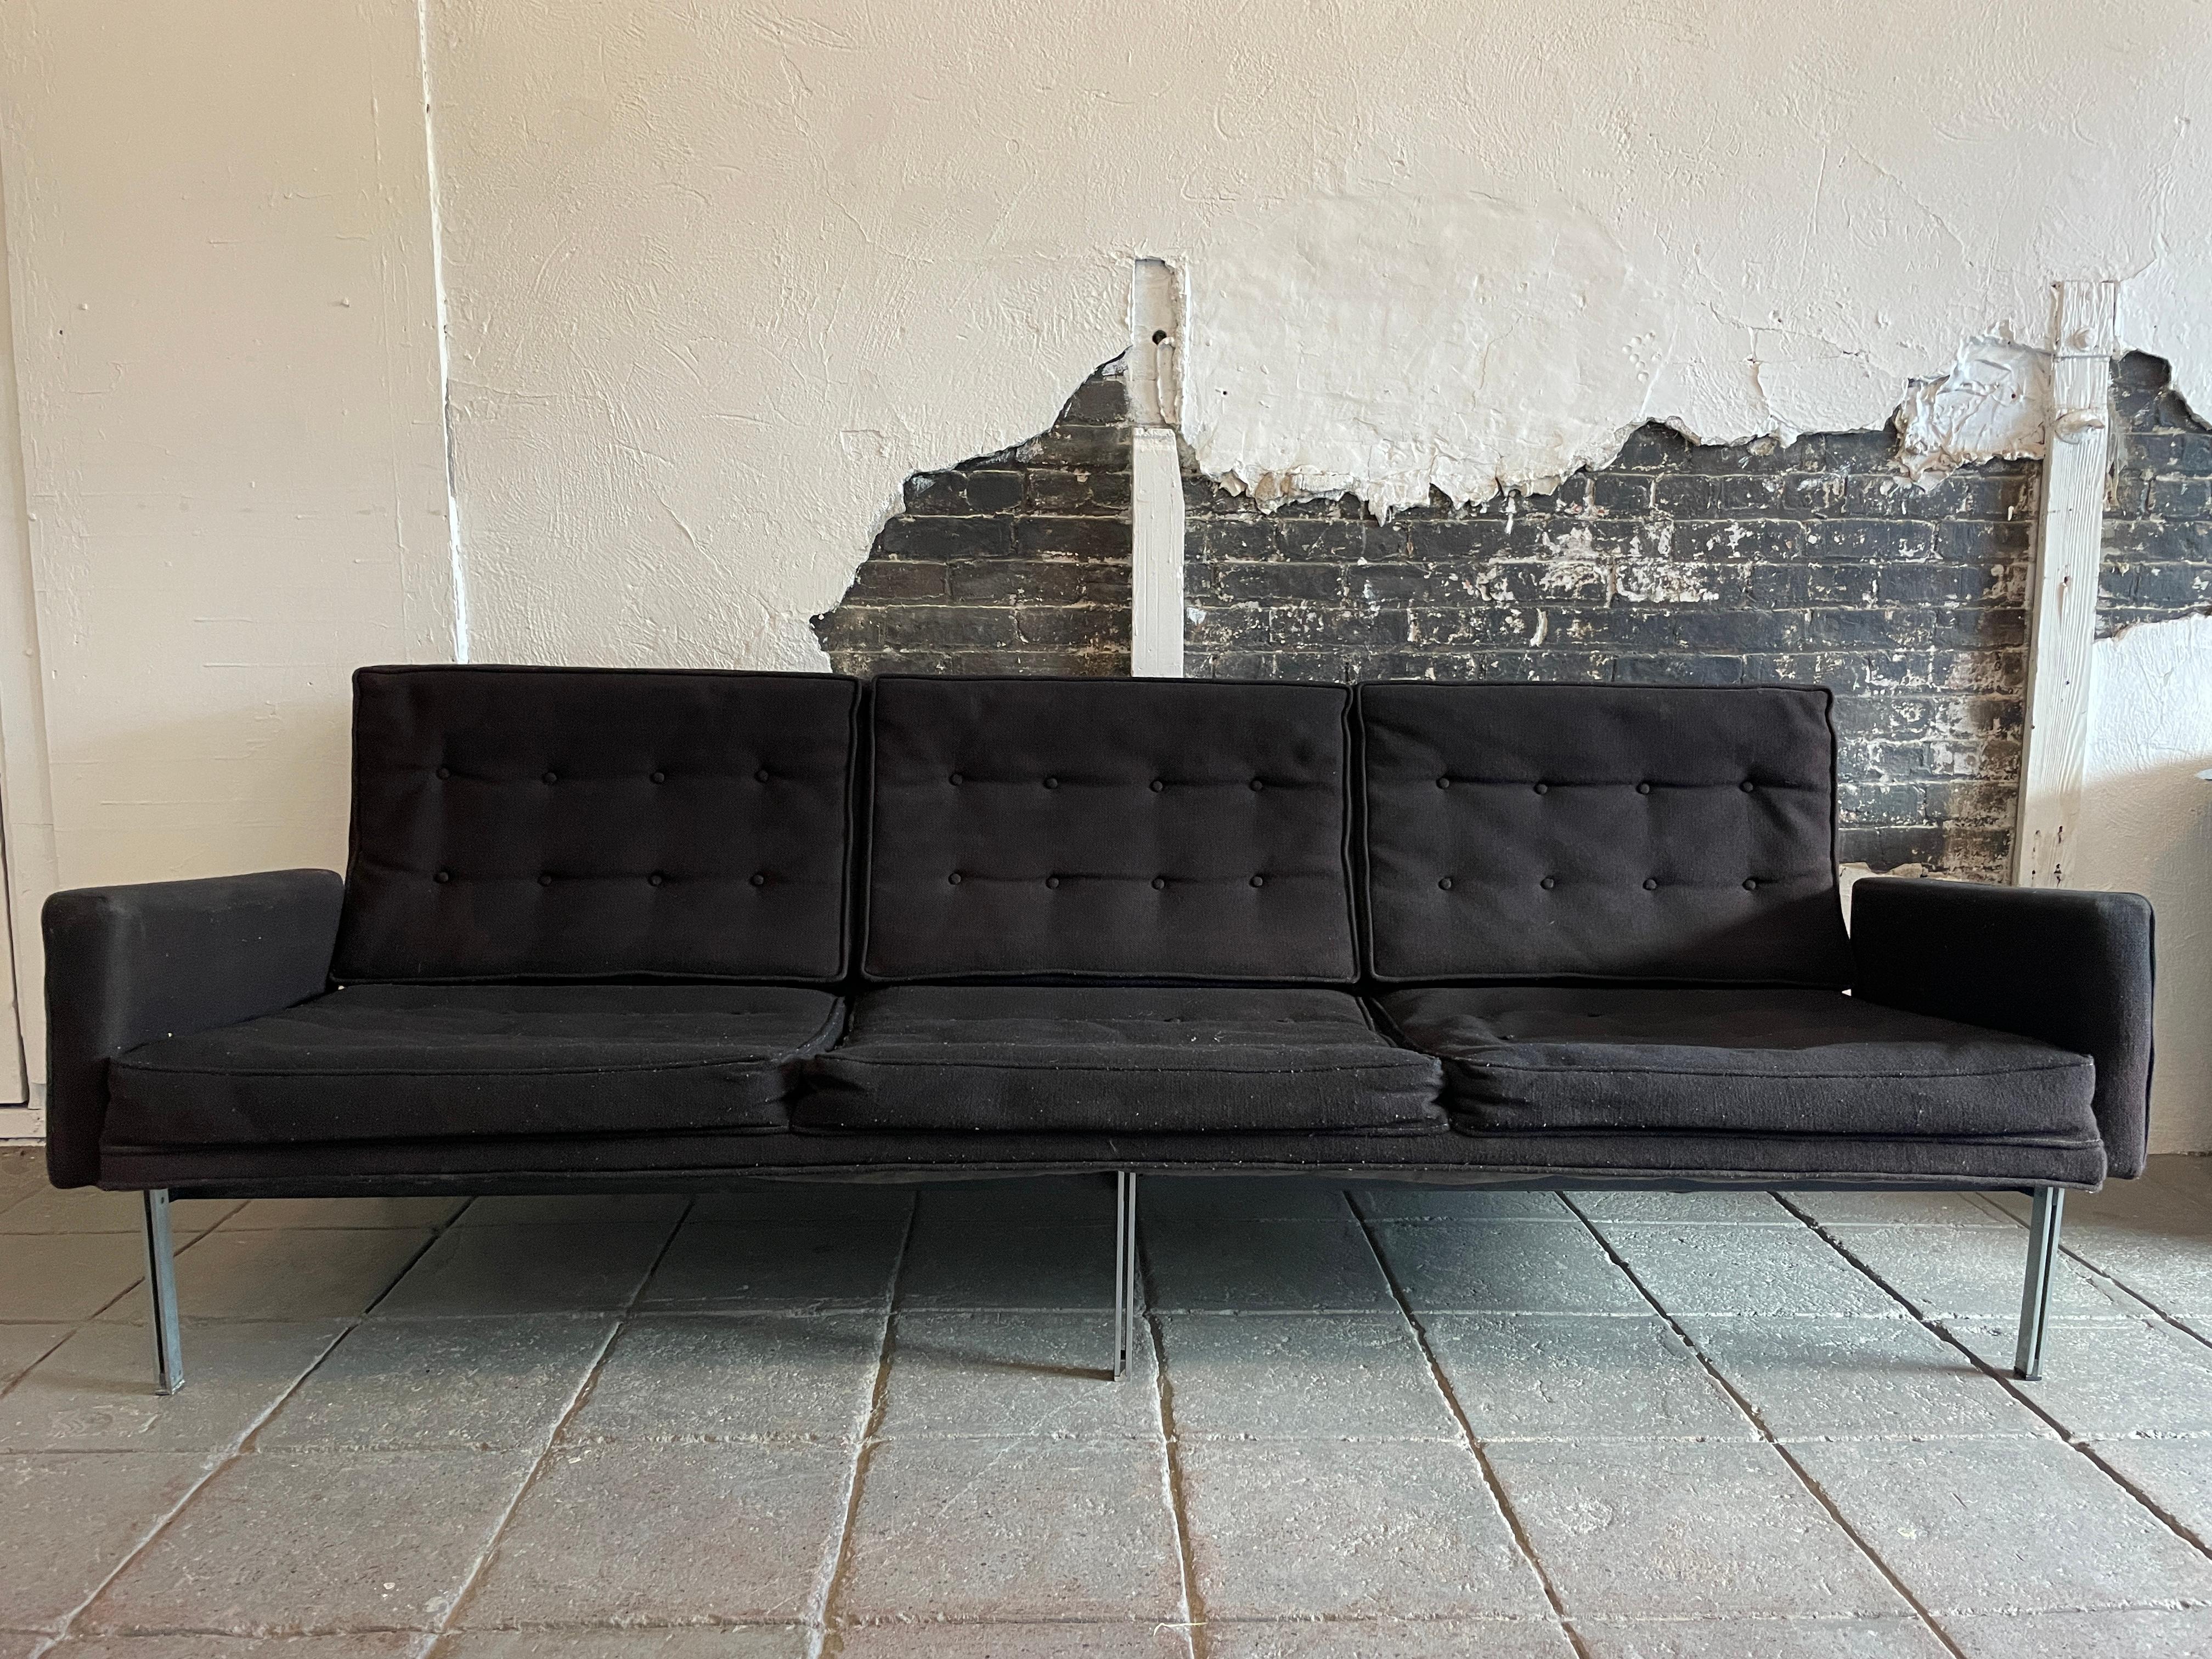 Vintage circa 1960 Midcentury Florence Knoll Parallel Bar System Sofa Modell #57 Dreisitziges Sofa mit Armlehnen. Entworfen von Florence Knoll für Knoll Int. USA. Solider Stahlrahmen, der neu gepolstert werden muss. Alle Polsterung und Schaumstoff